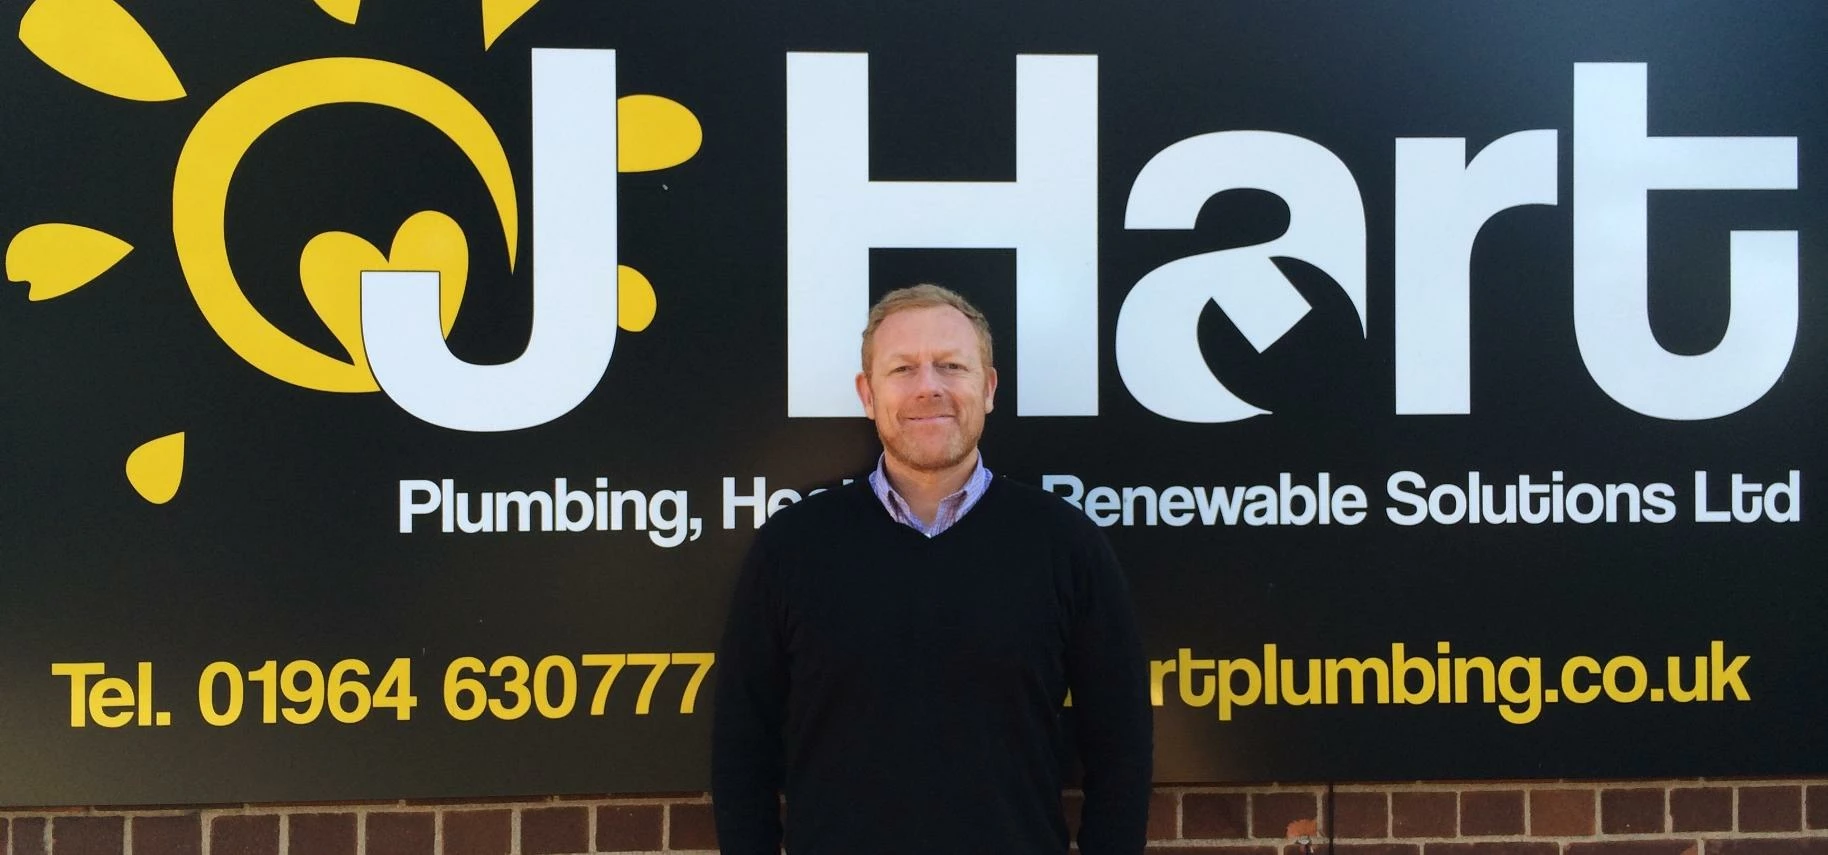 Jonny Hart, Founder and Director of J Hart Plumbing, Heating & Renewables